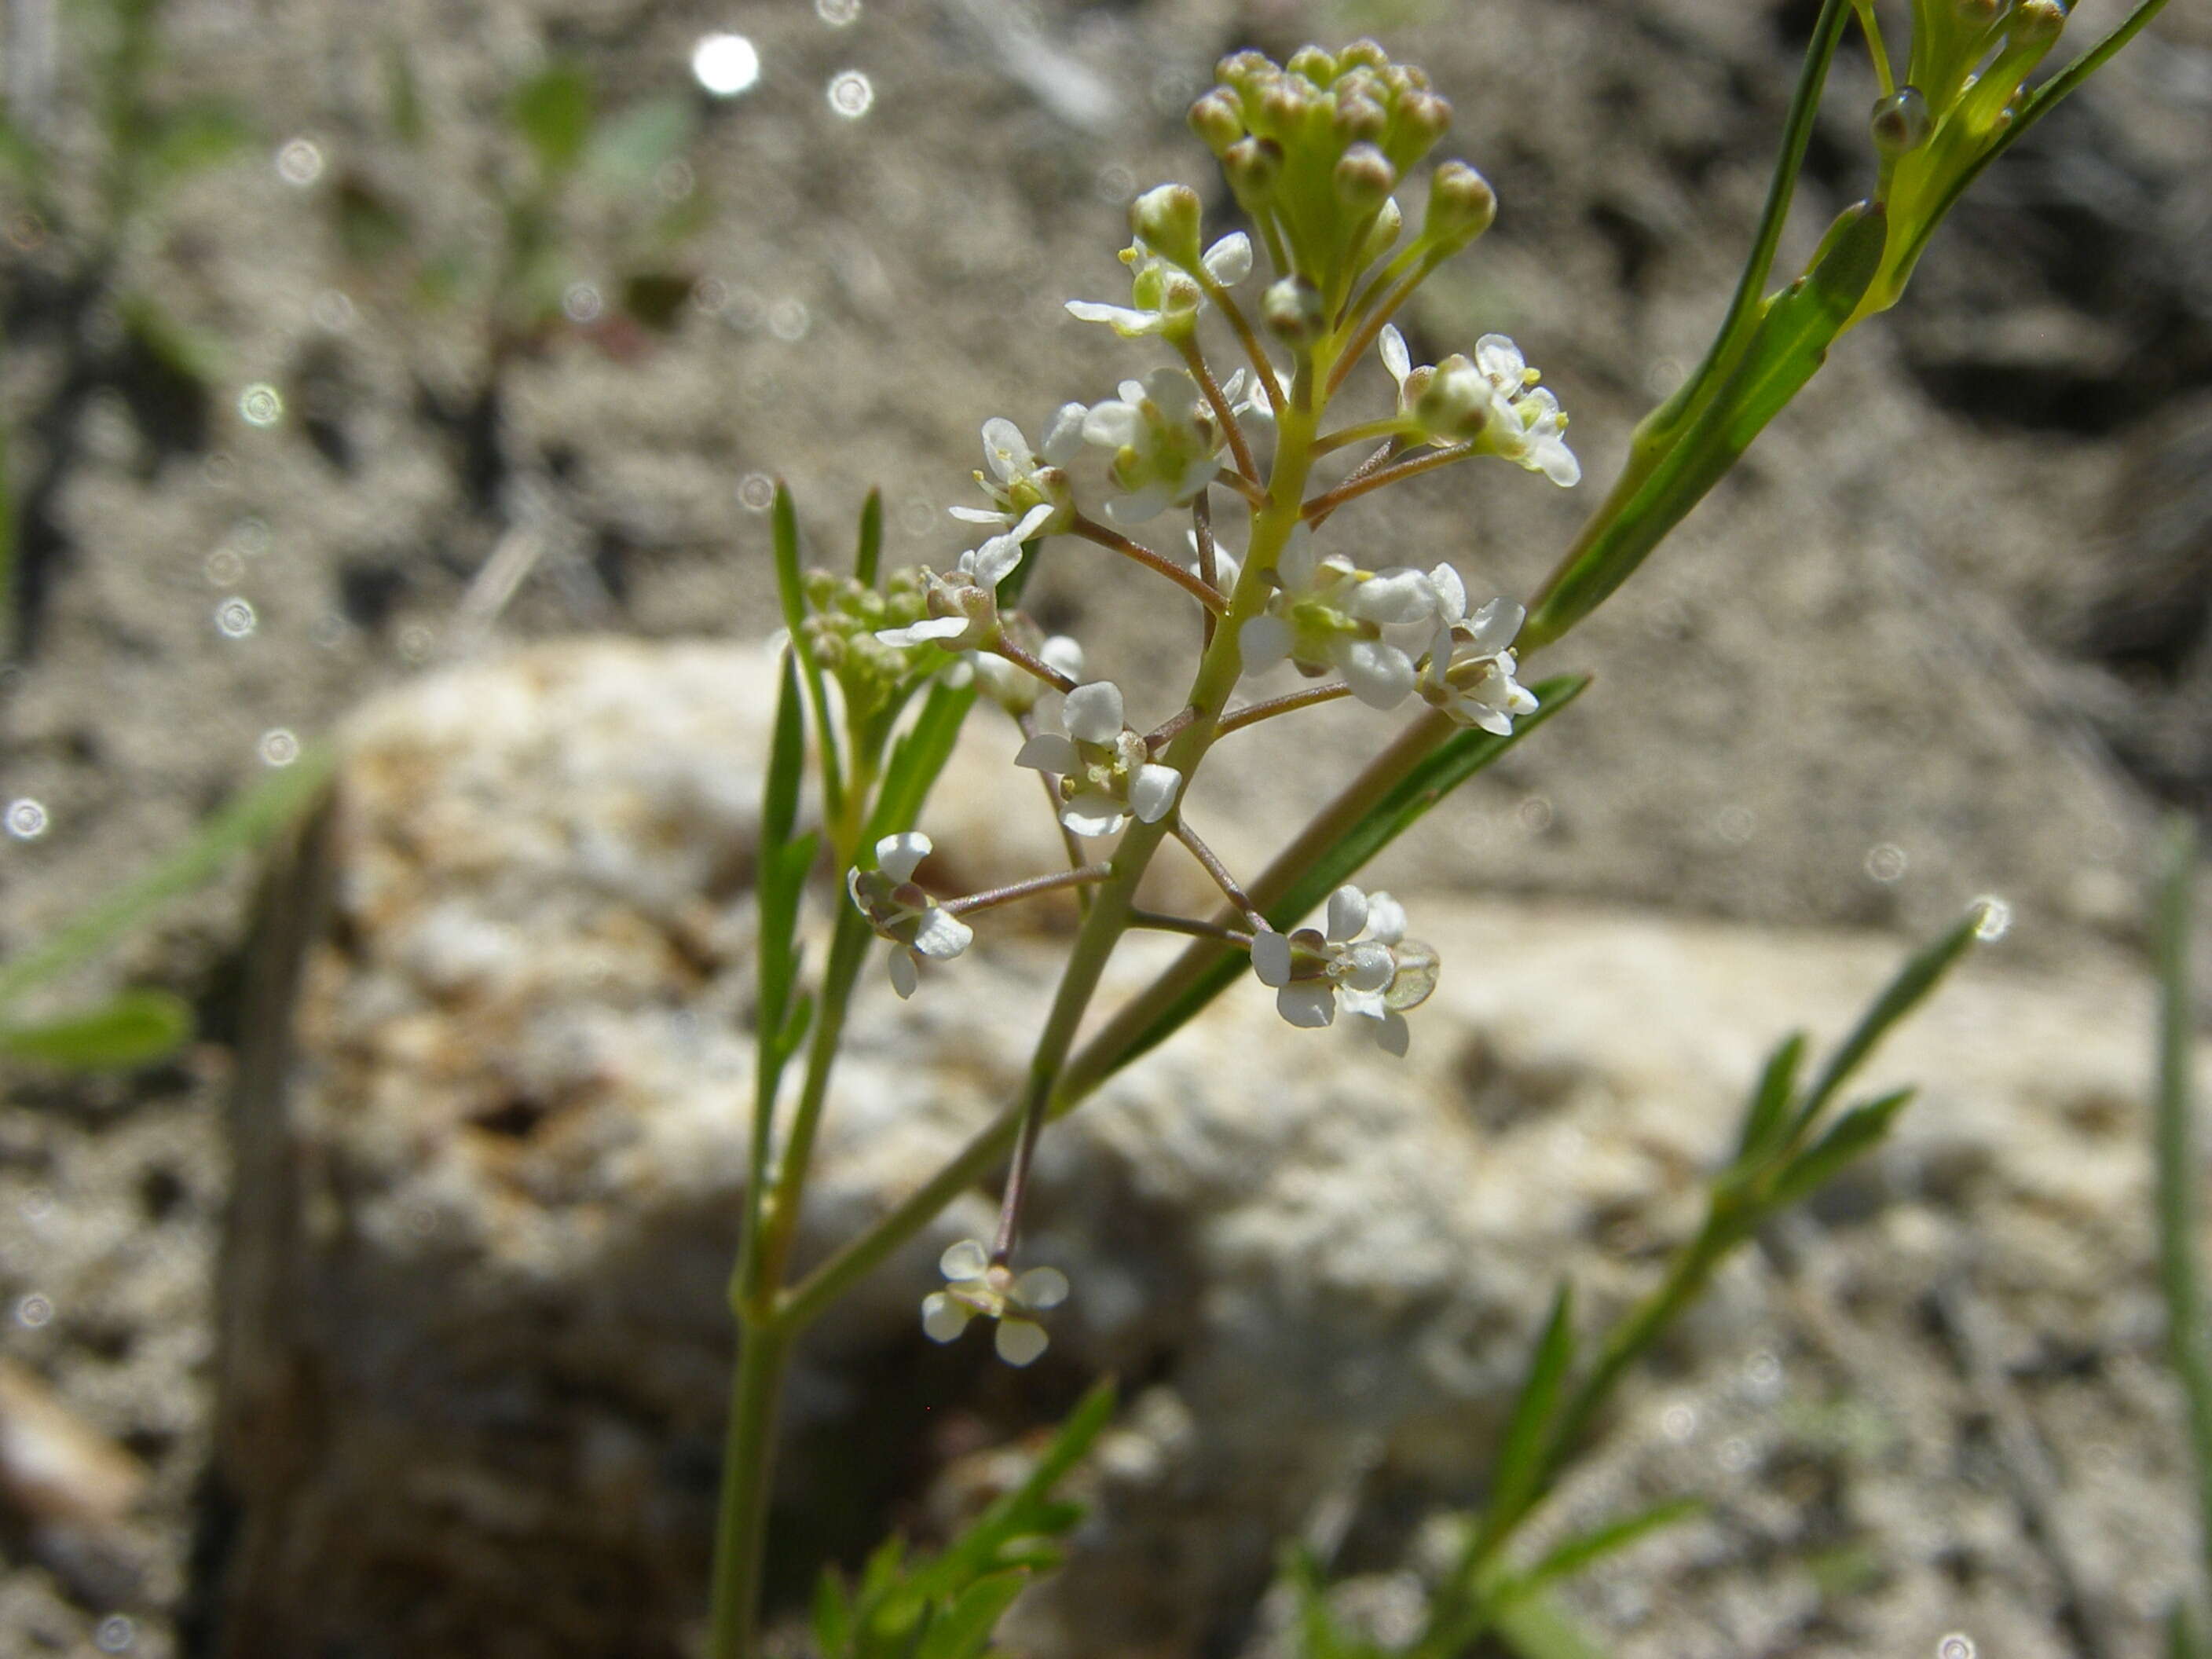 Image of Virginia pepperweed